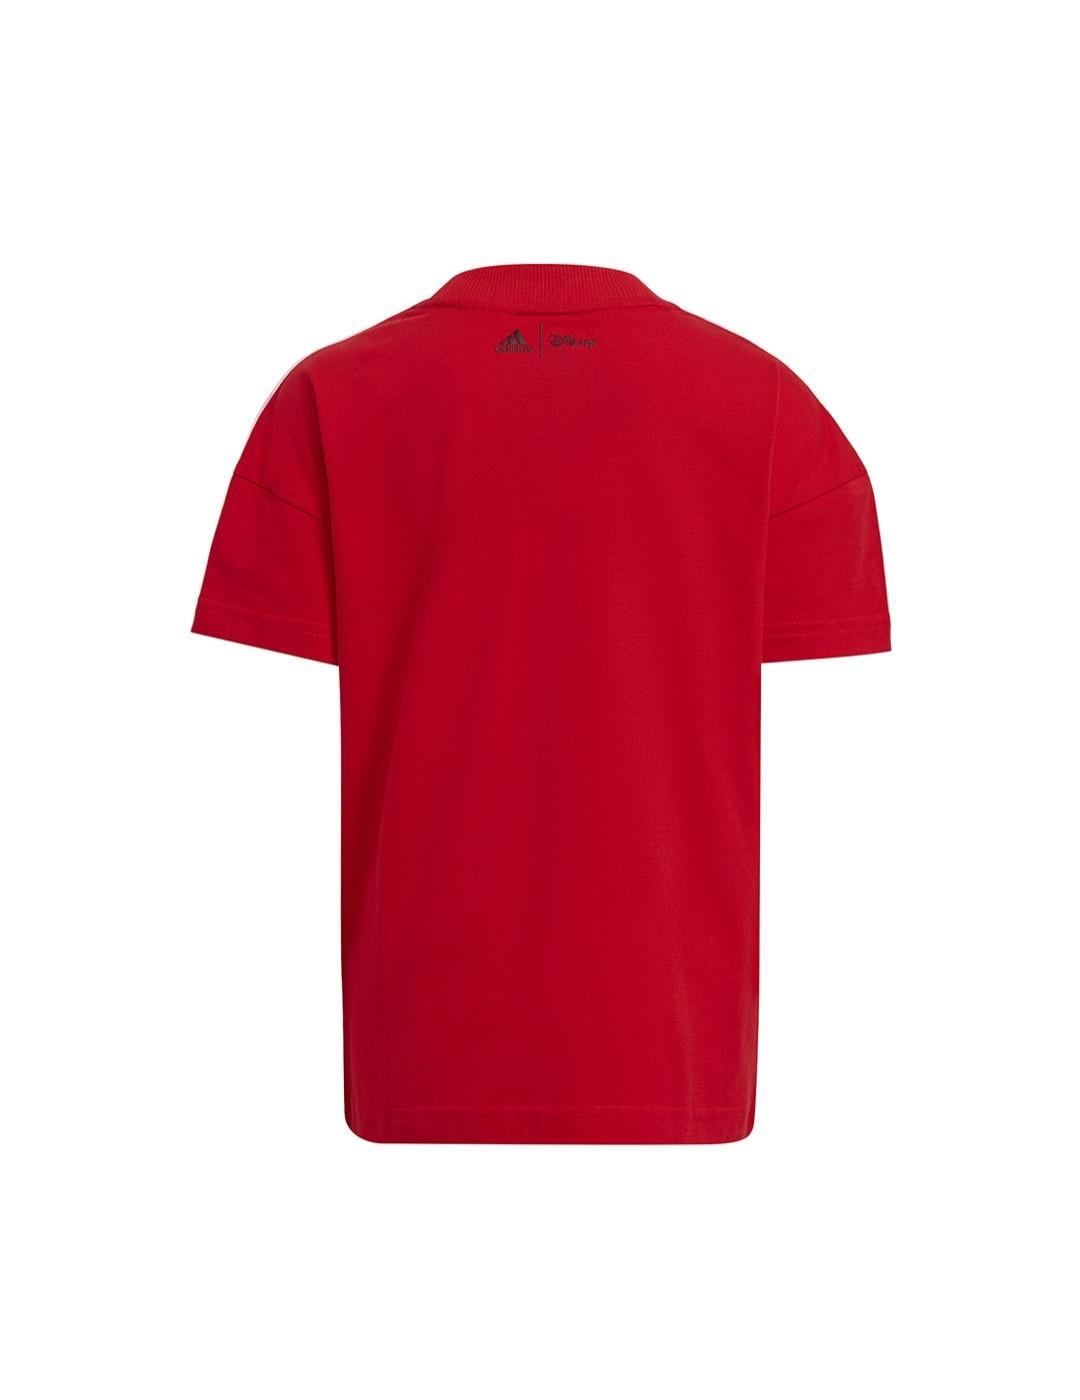 Camiseta Niño adidas Lk Dy Mm Roja